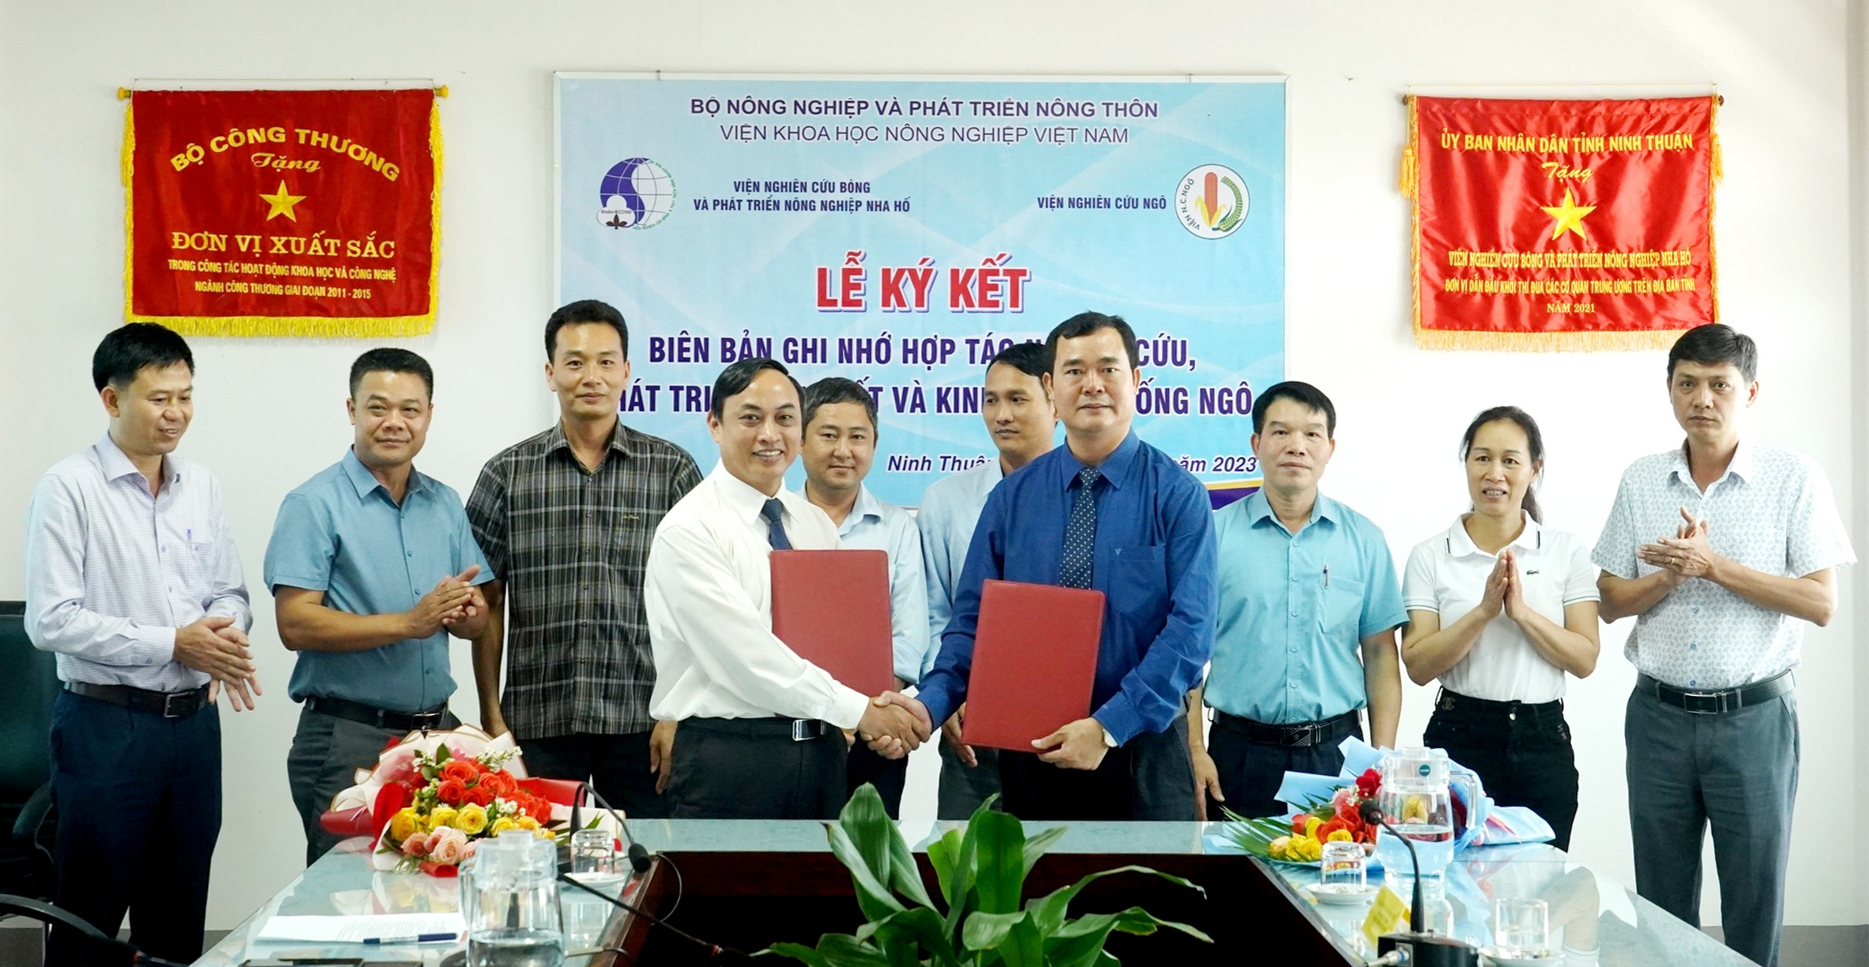 TS Mai Văn Hào, Viện trưởng Viện Nha Hố (trái) và lãnh đạo Viện Nghiên cứu Ngô ký kết Biên bản ghi nhớ hợp tác nghiên cứu, phát triển sản xuất và kinh doanh giống ngô. Ảnh: PV.